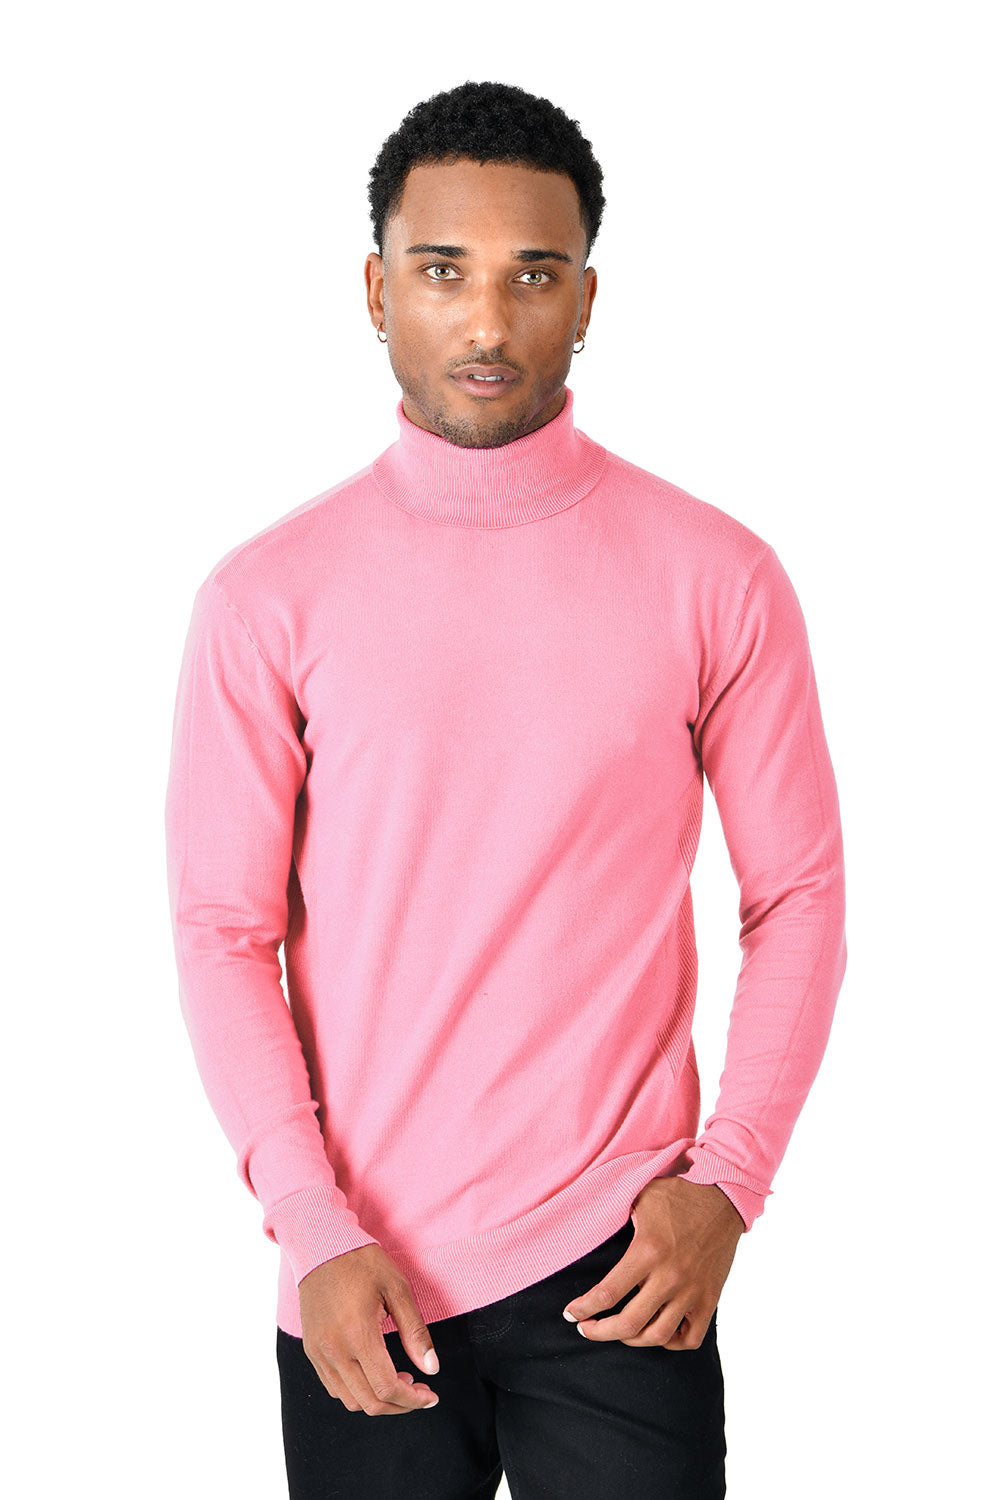 Men's Turtleneck Ribbed Solid Color Basic Sweater LS2100 Rose